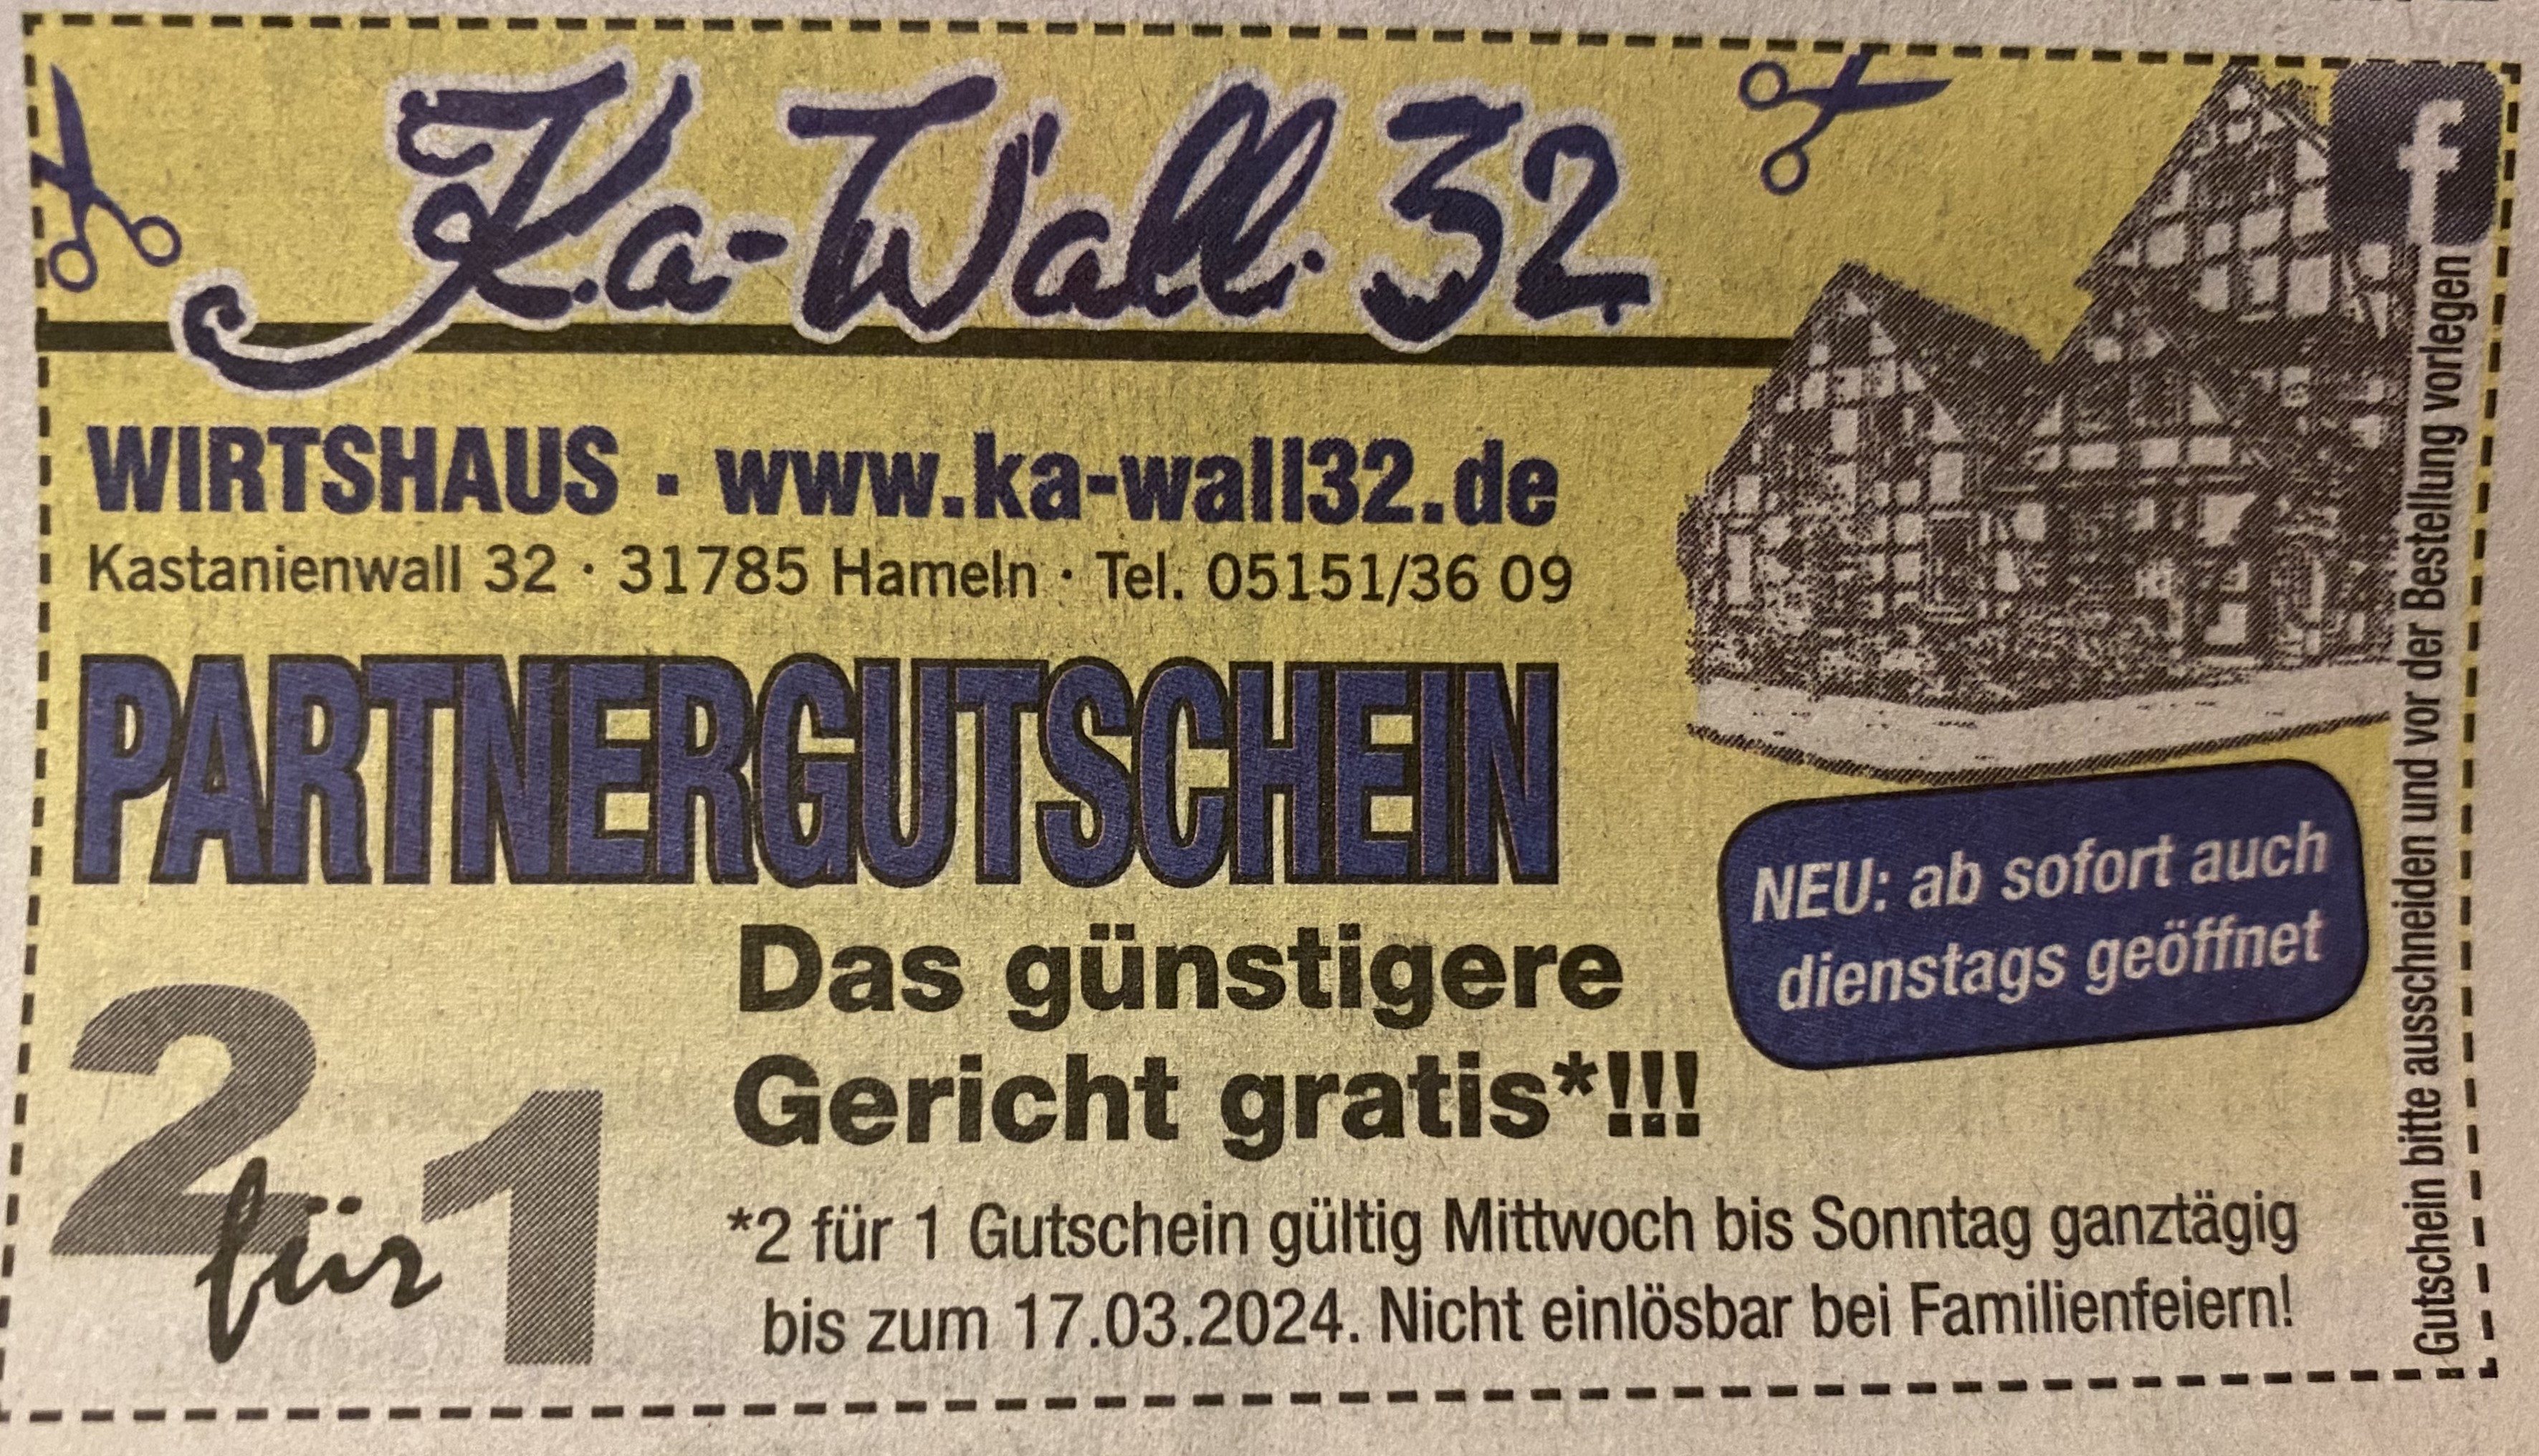 Bild 1 Wirtshaus Ka-Wall 32, Buchtmann Iris in Hameln